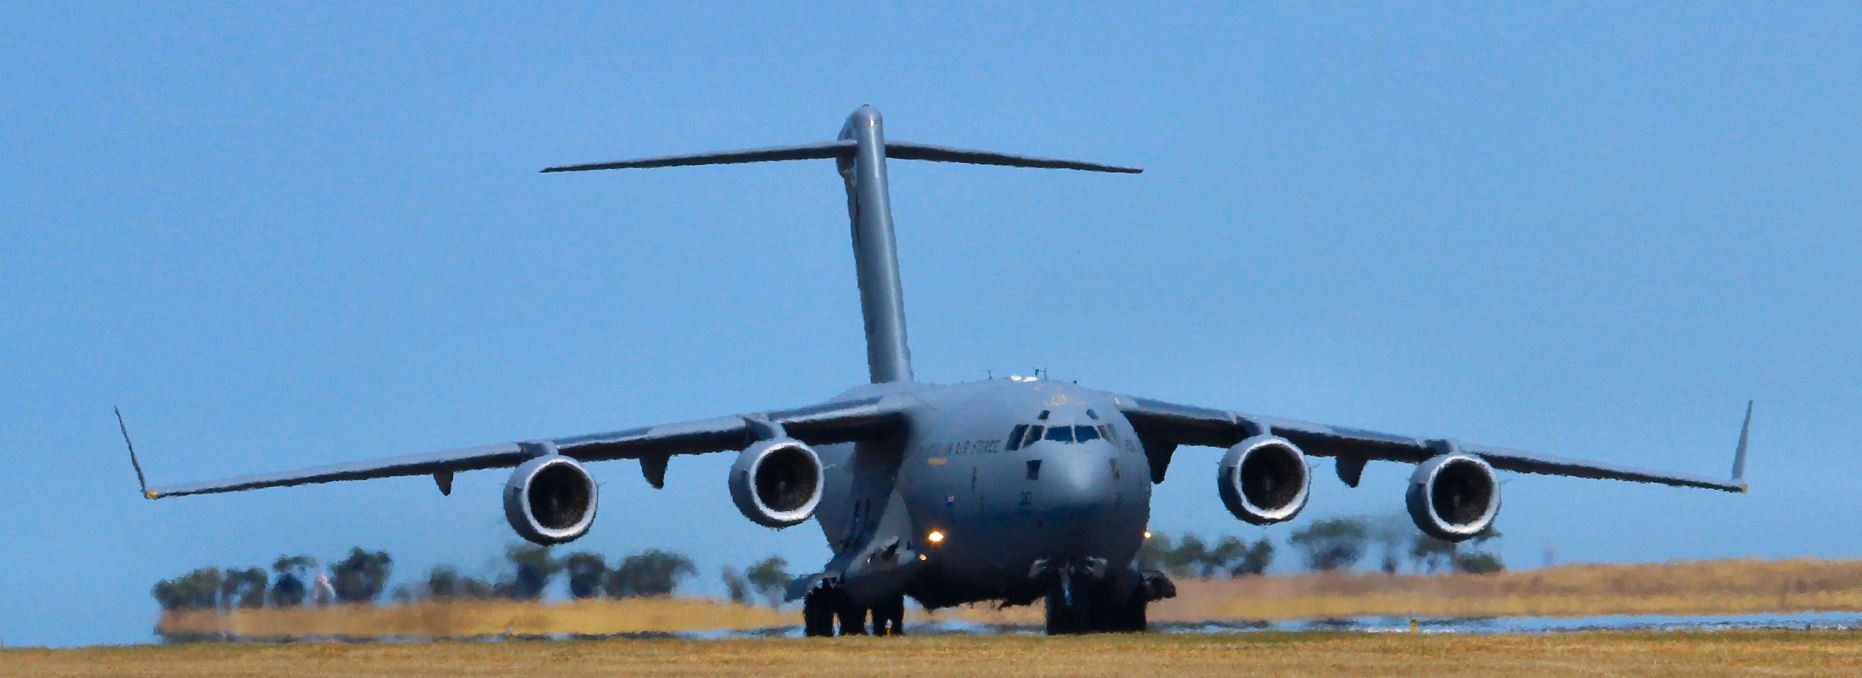 RAAF C-17